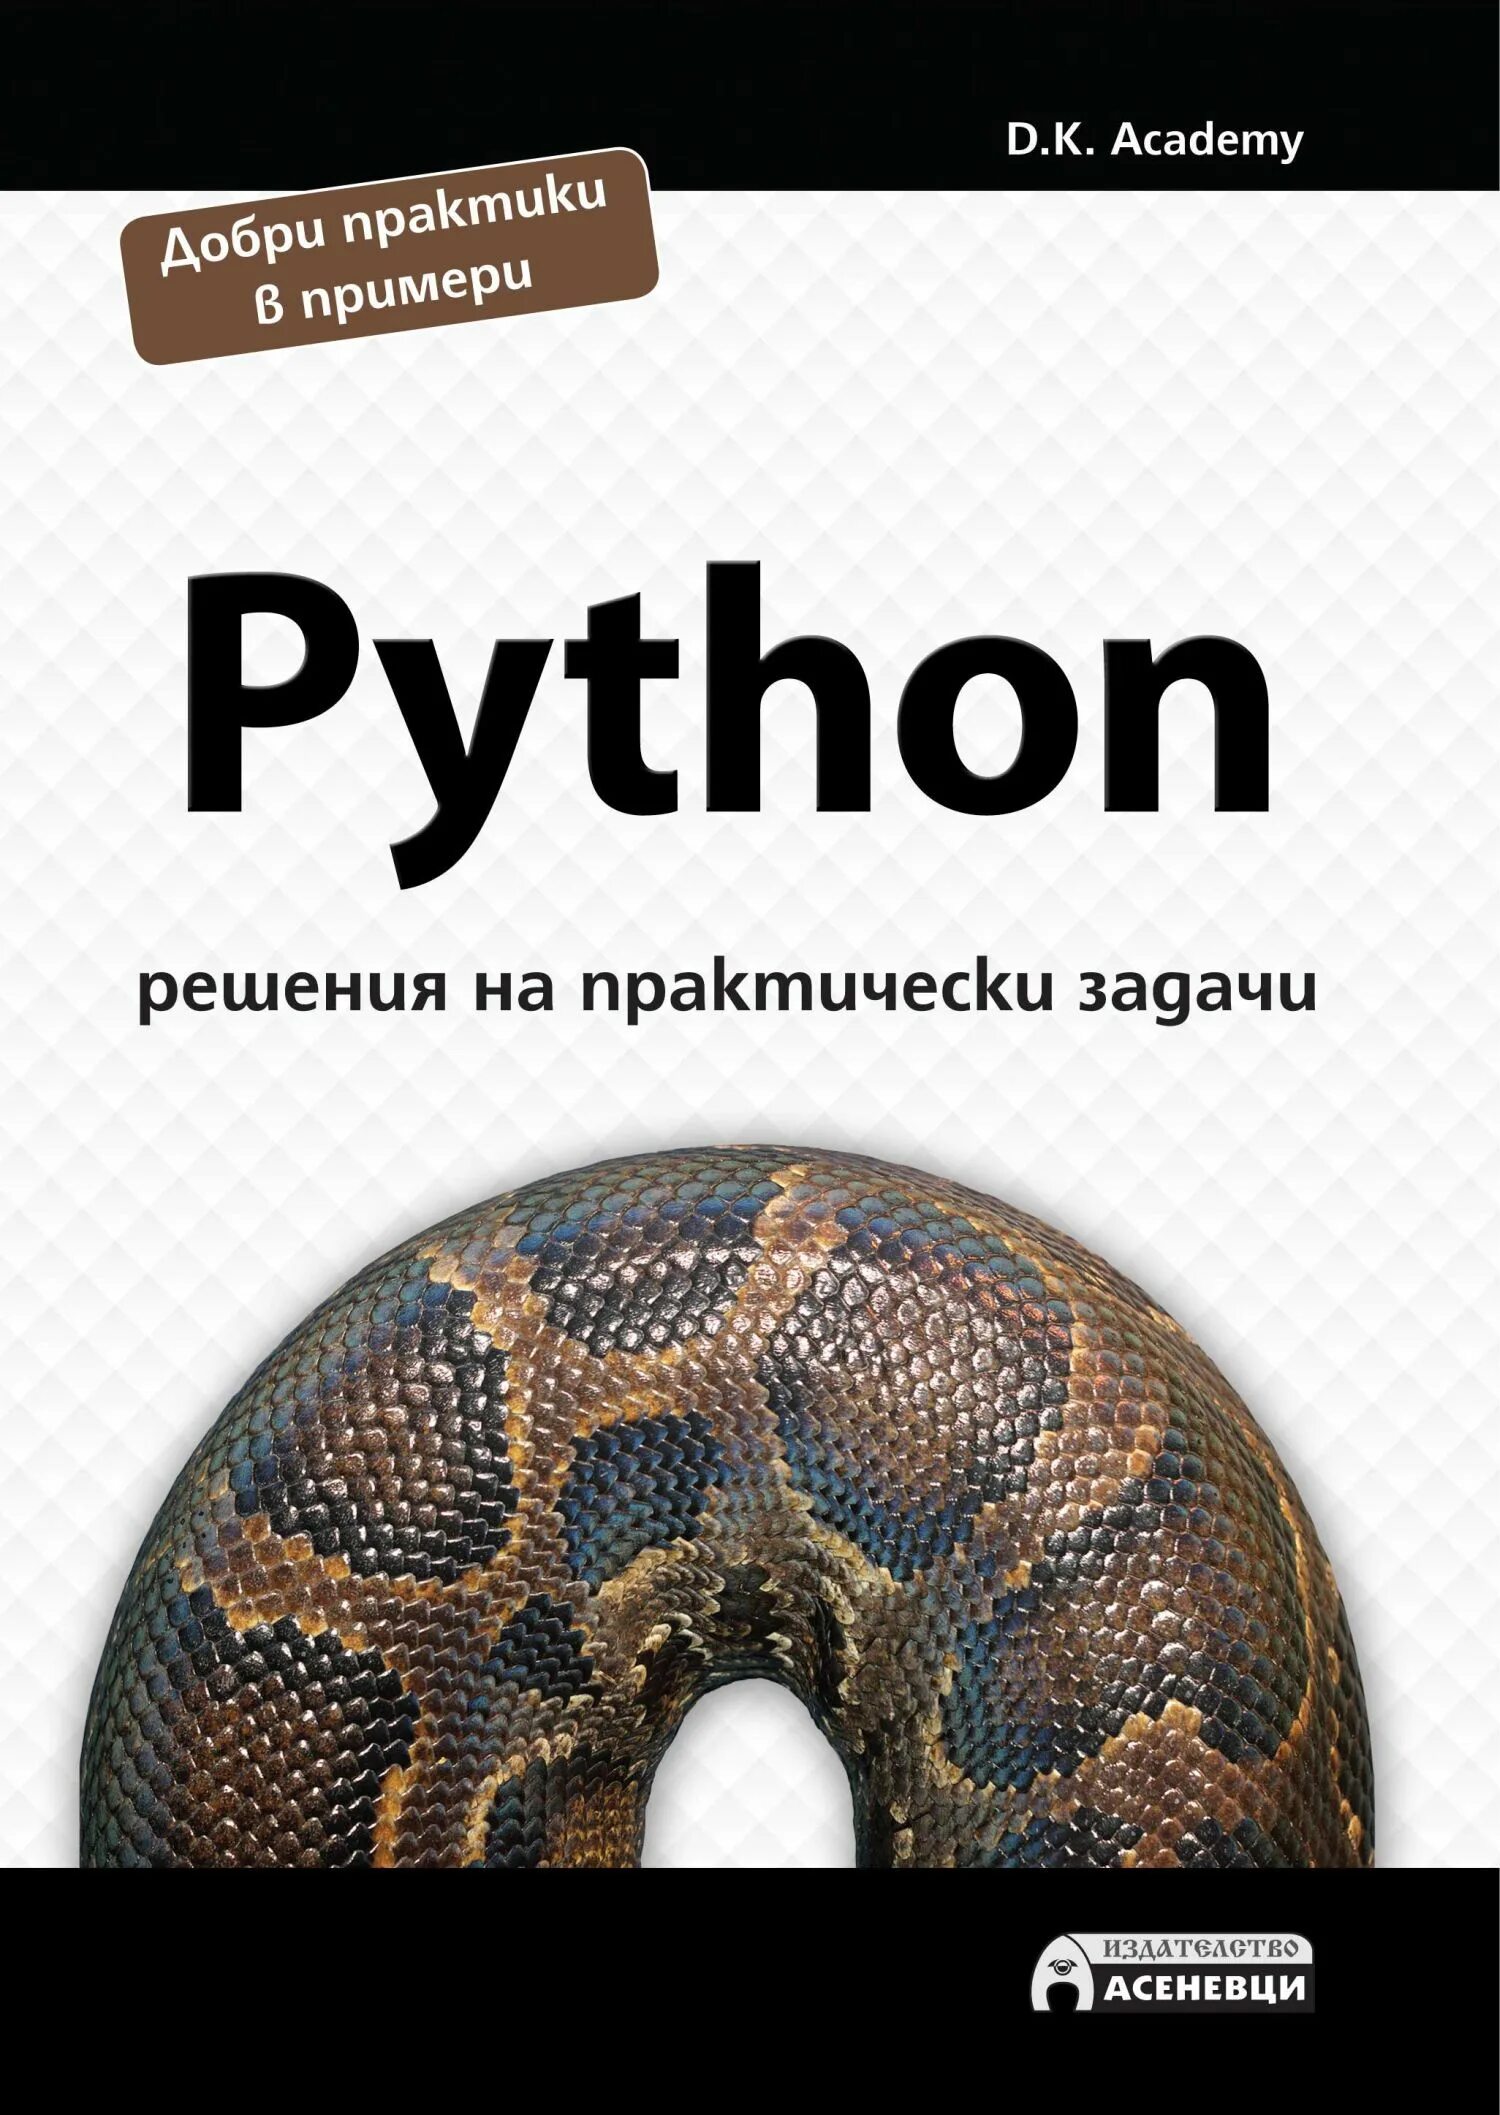 Задачи питон. Книги по Python для начинающих. Задания для питона для начинающих. Задачи на питоне с решением. 9 задание питоном